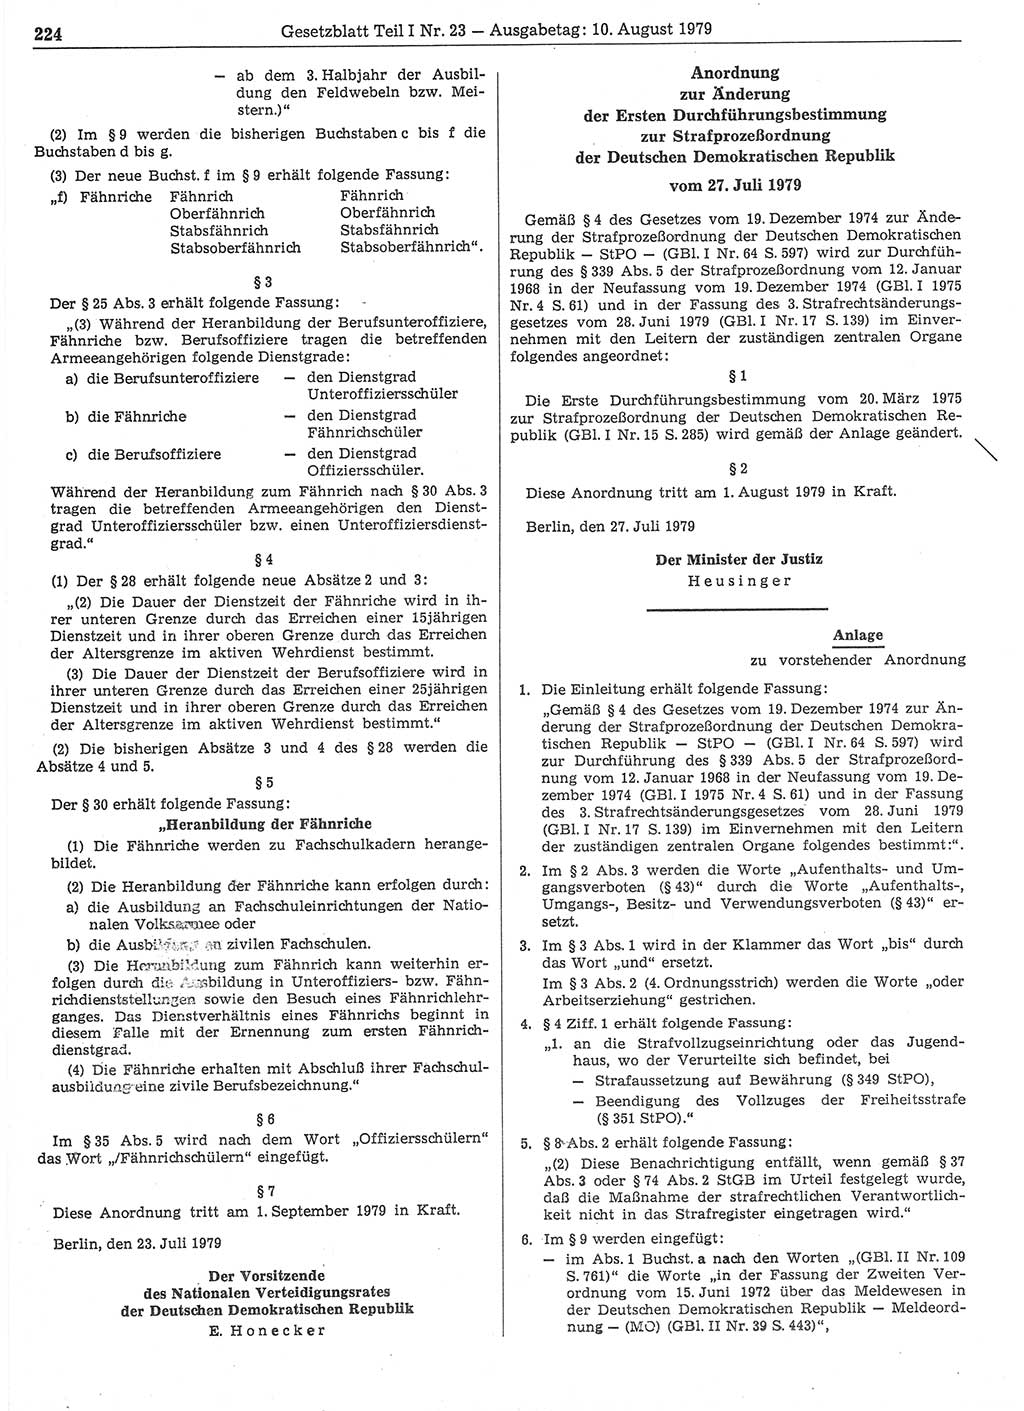 Gesetzblatt (GBl.) der Deutschen Demokratischen Republik (DDR) Teil Ⅰ 1979, Seite 224 (GBl. DDR Ⅰ 1979, S. 224)